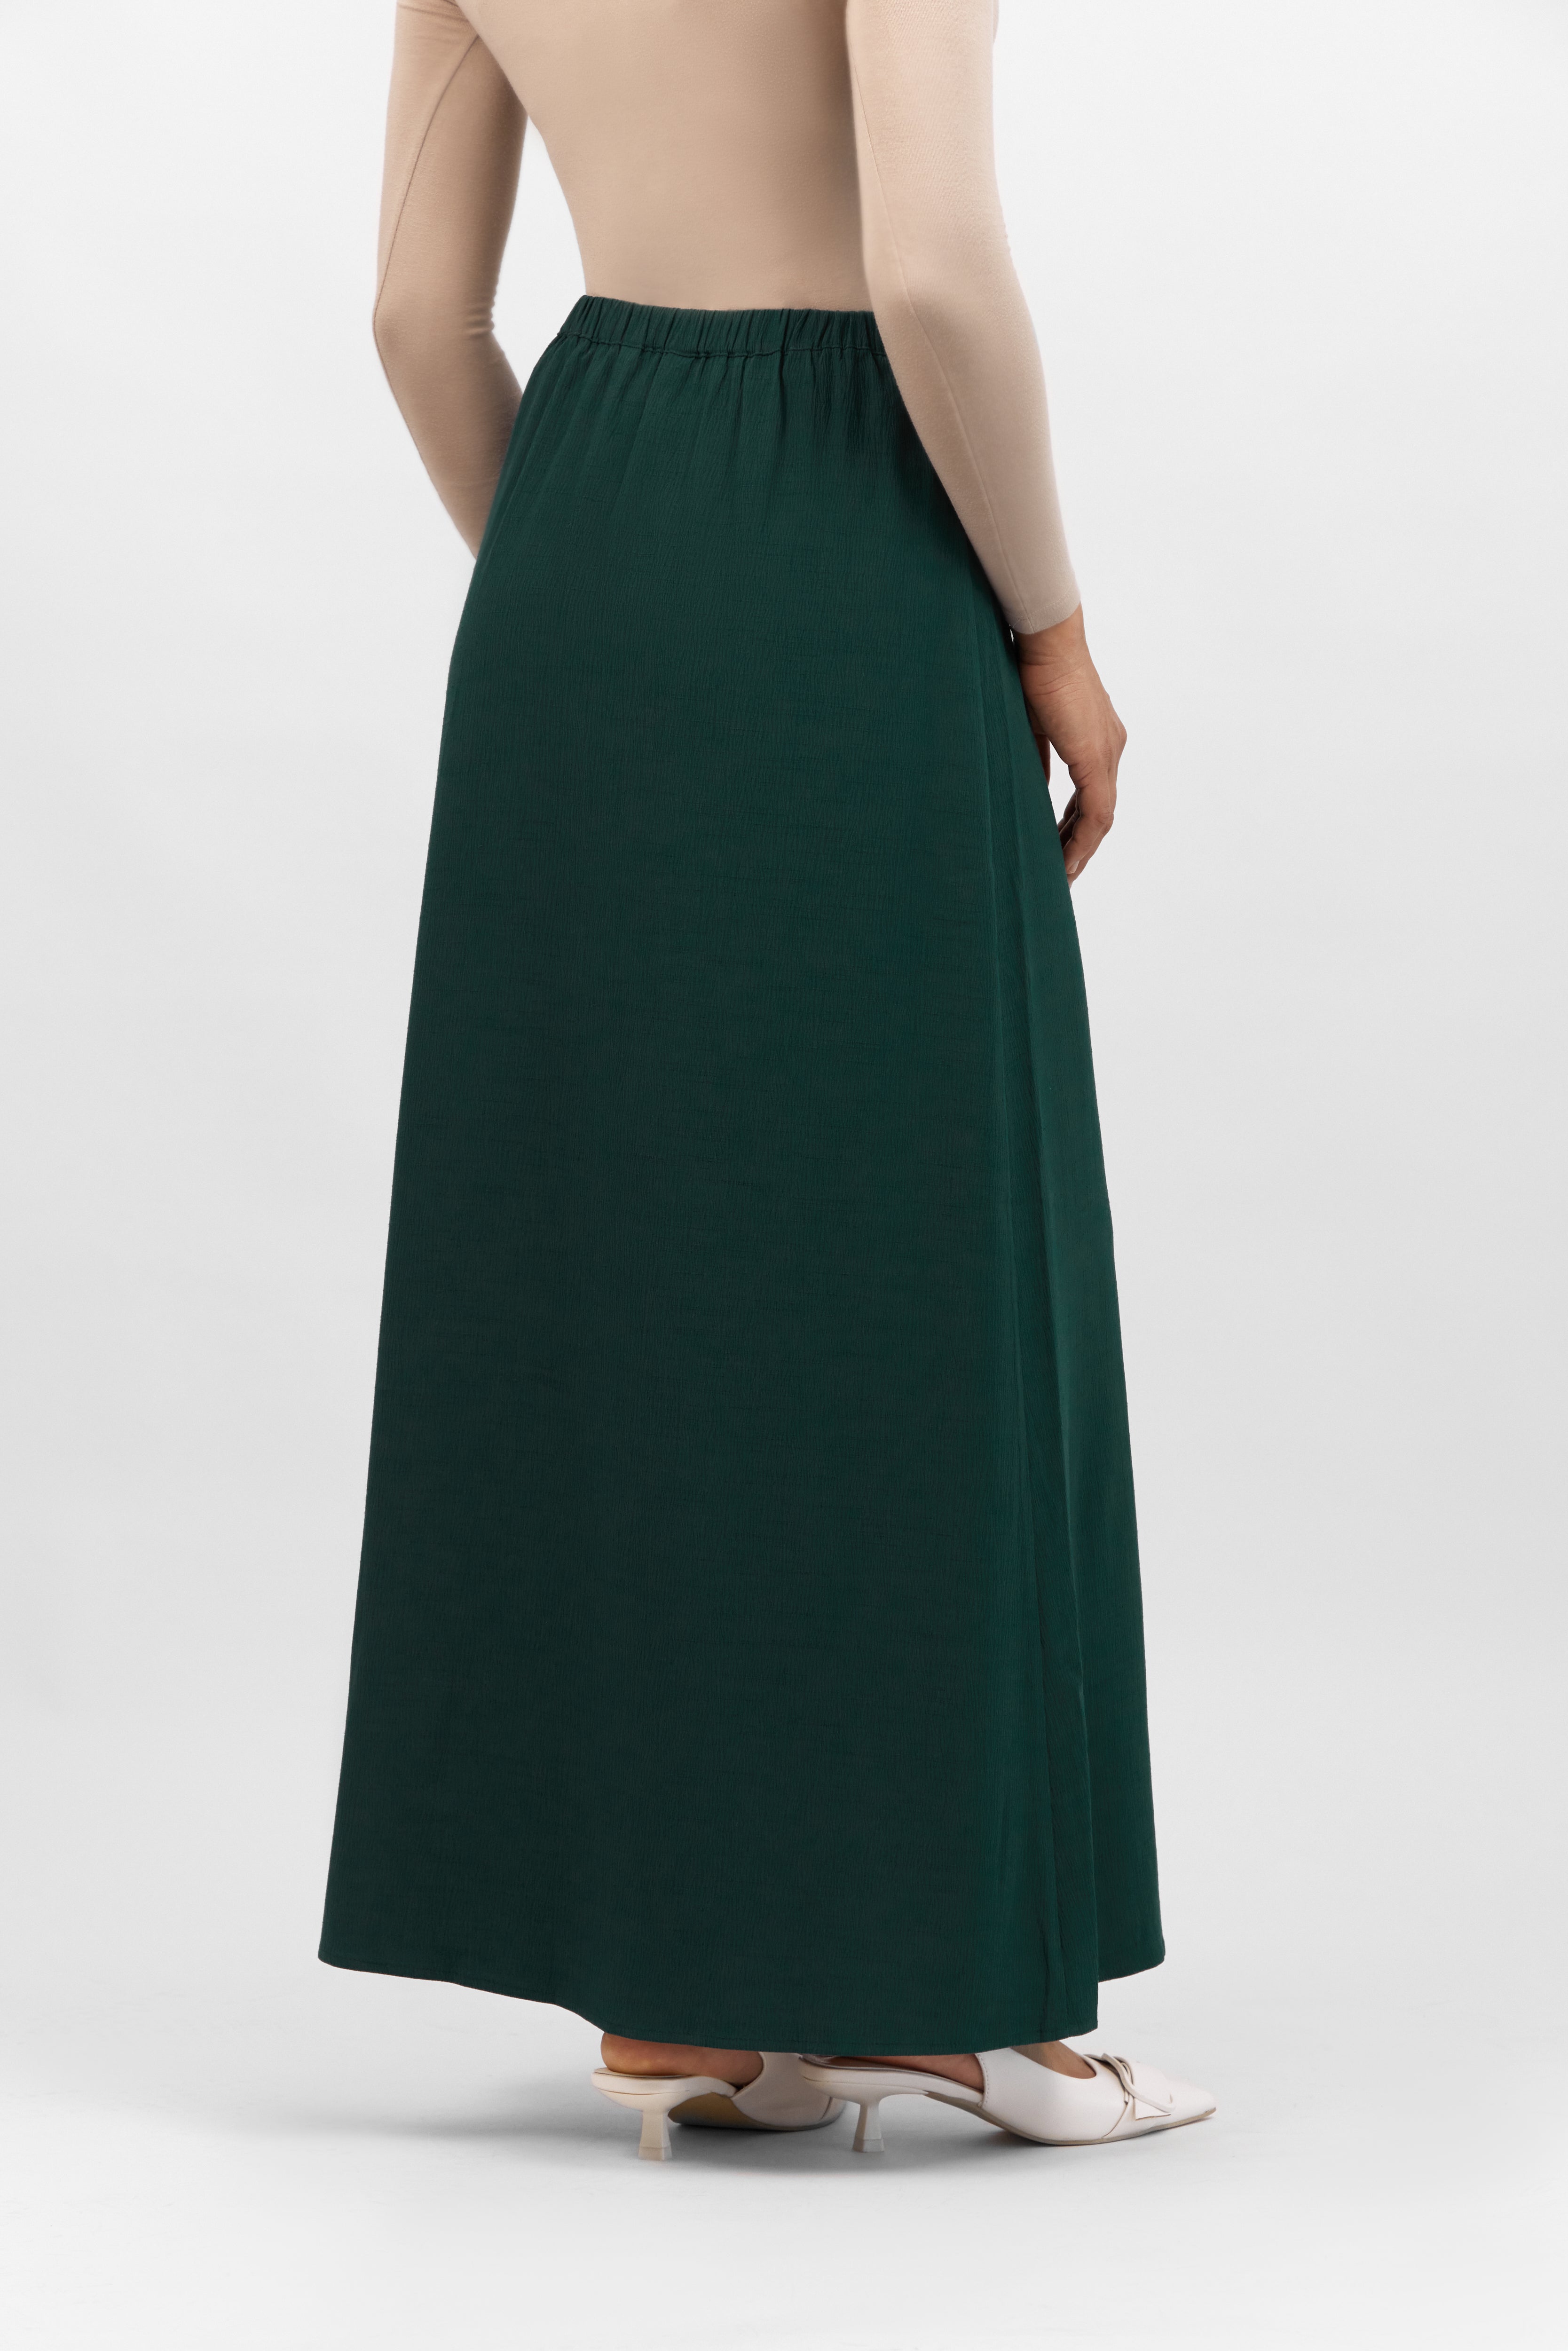 AE - Flowy Maxi Skirt - Emerald